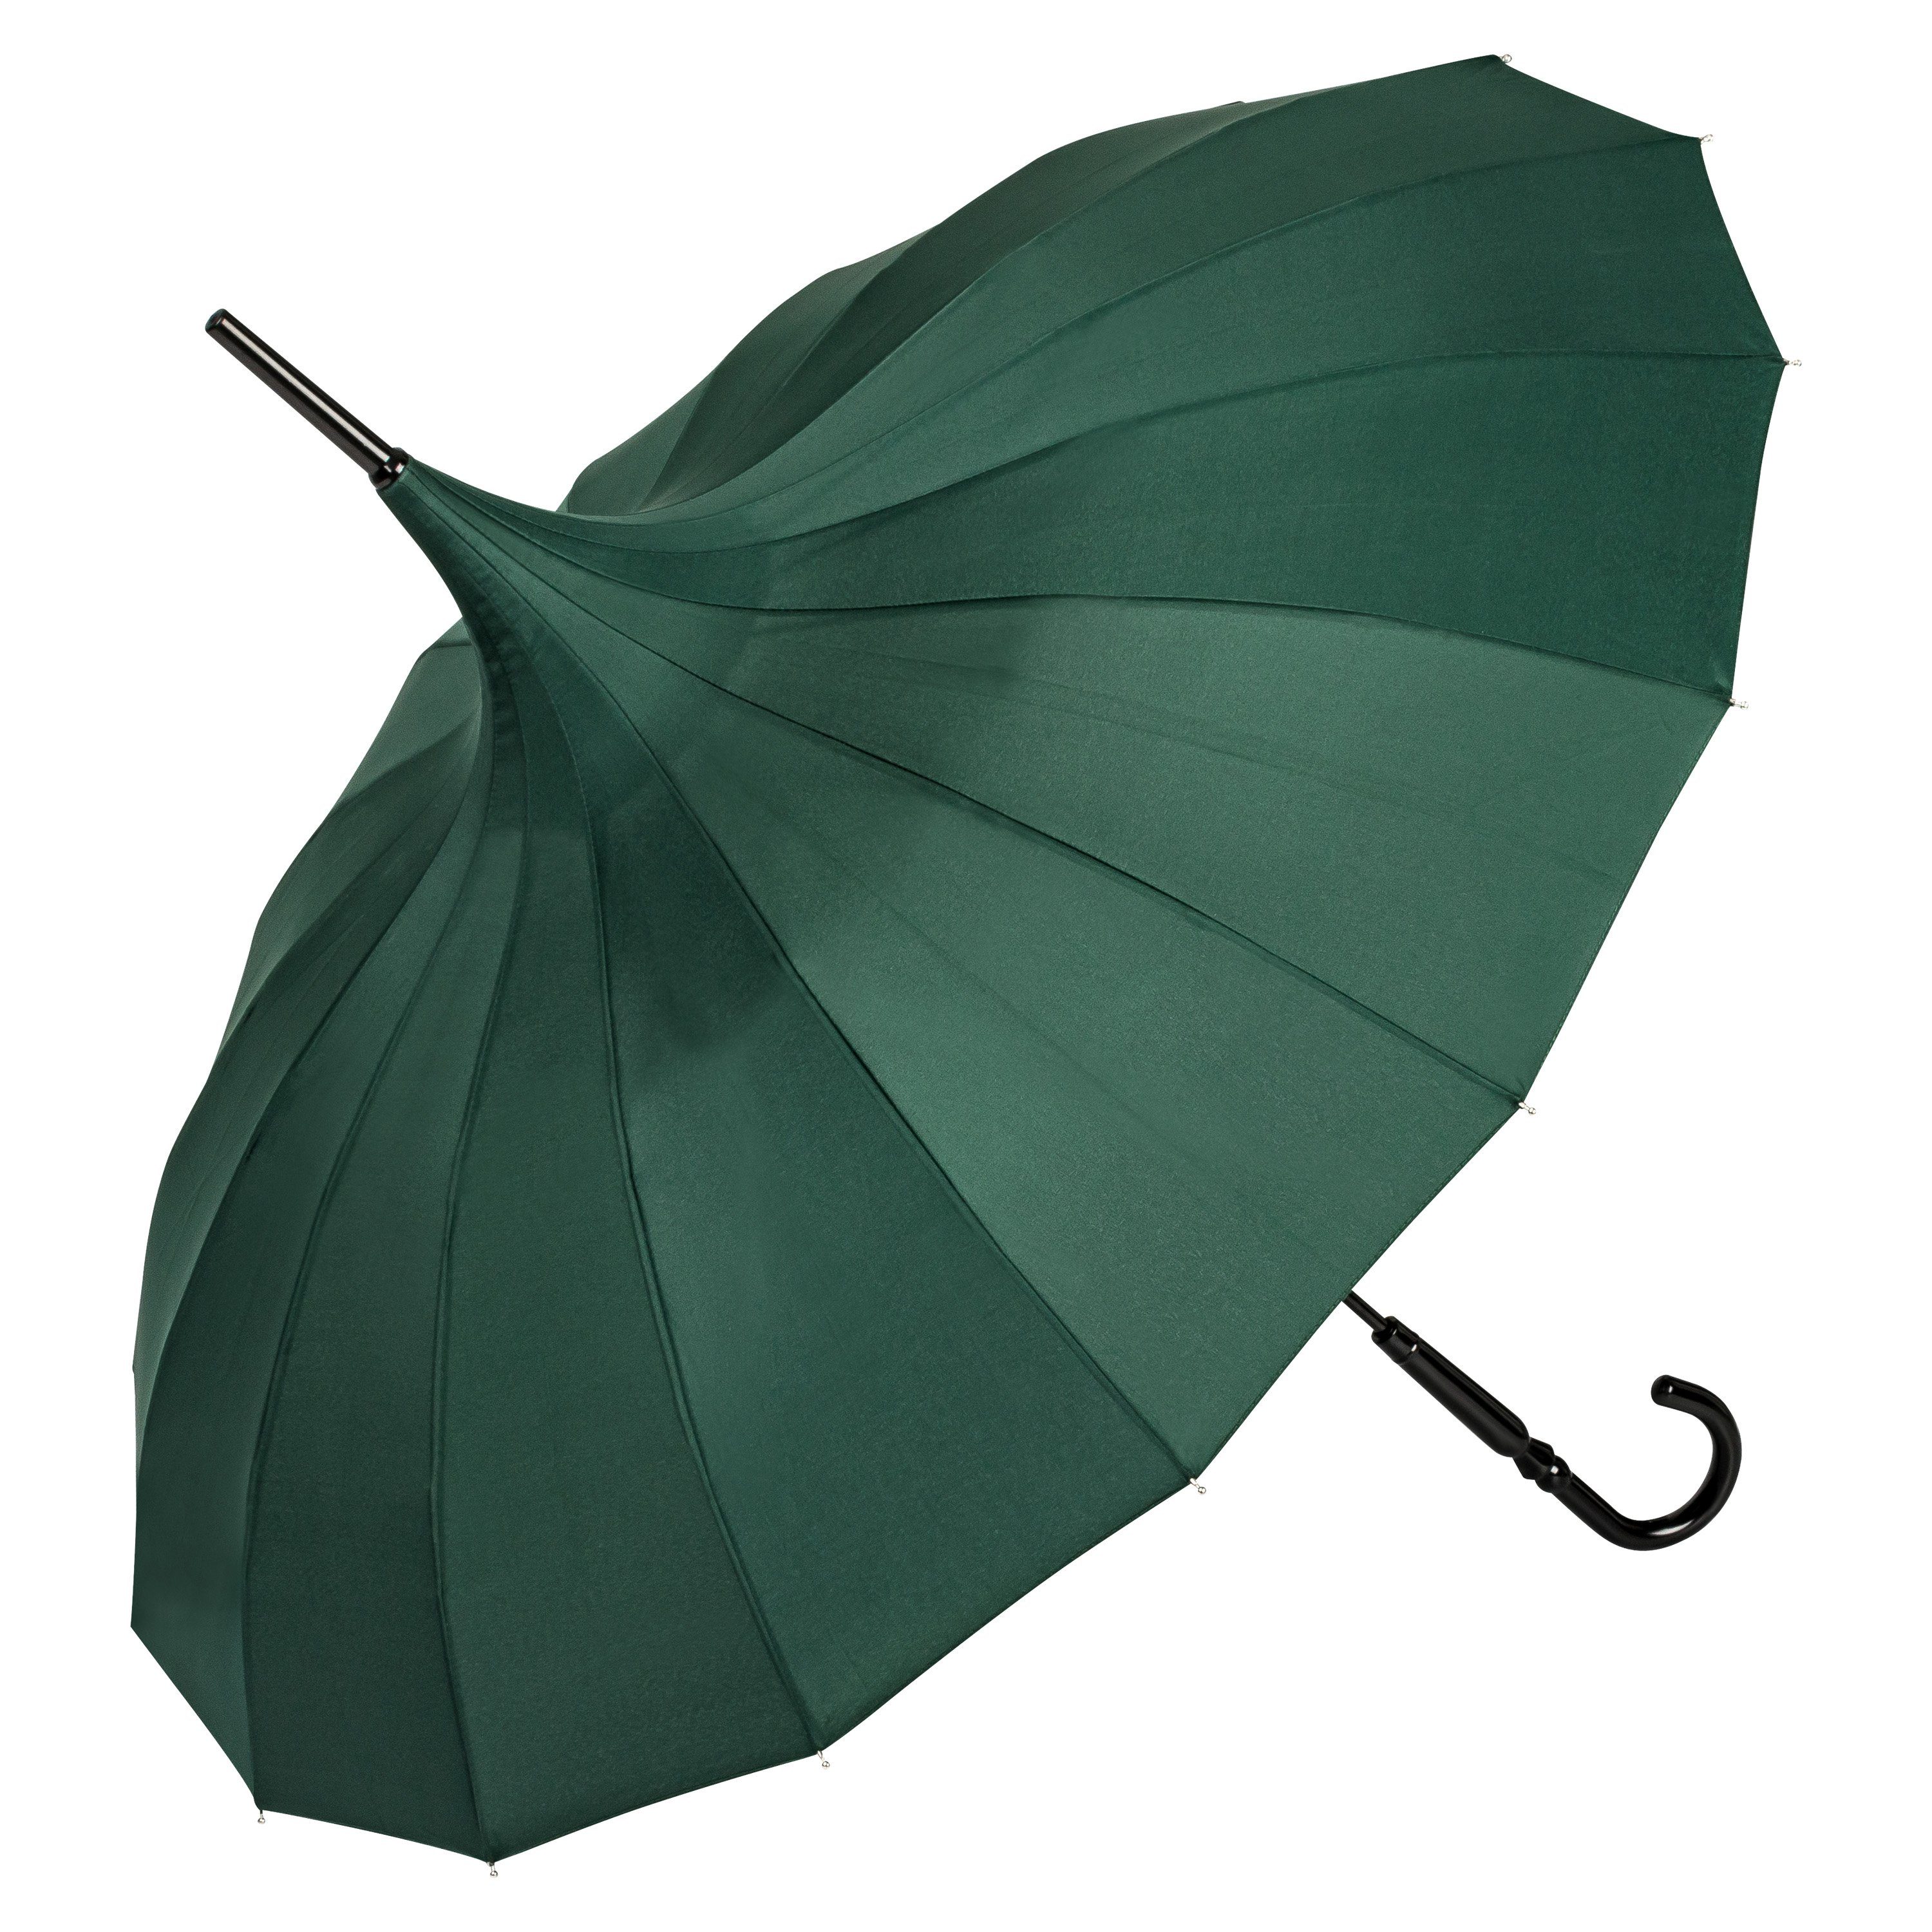 von Lilienfeld Stockregenschirm Regenschirm Sonnenschirm Pagode Charlotte, Pagodenform mit 16 Segmenten grün